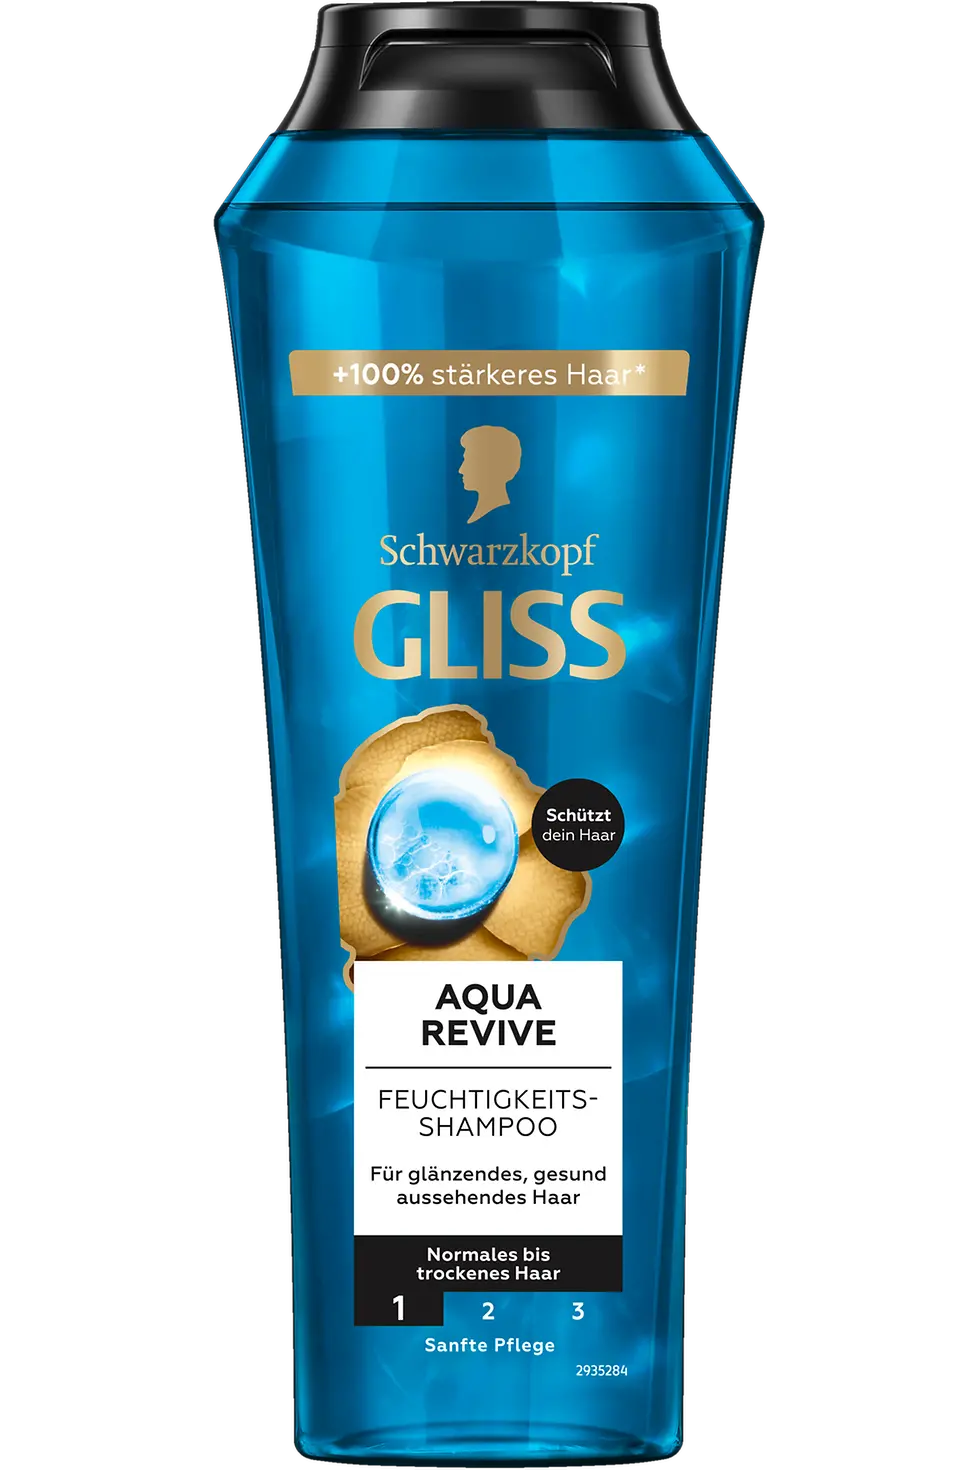 
Gliss Aqua Revive Feuchtigkeits-Shampoo